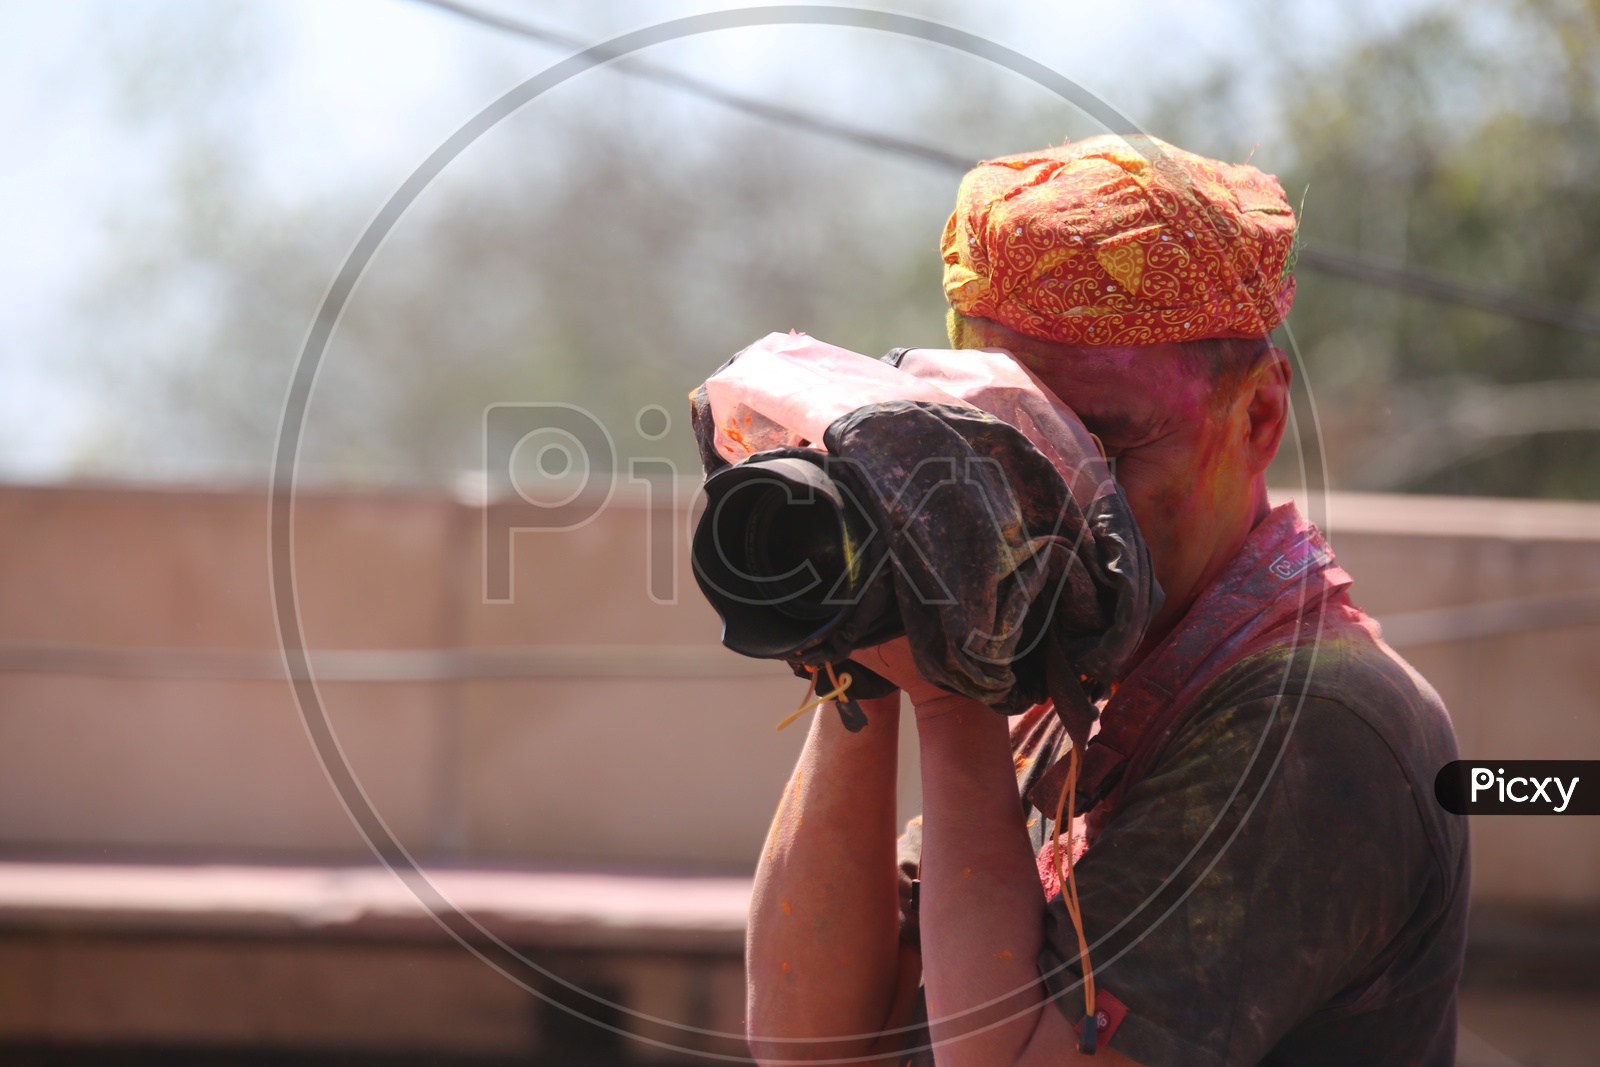 Photographer Capturing photos in Barsana Holi celebrations